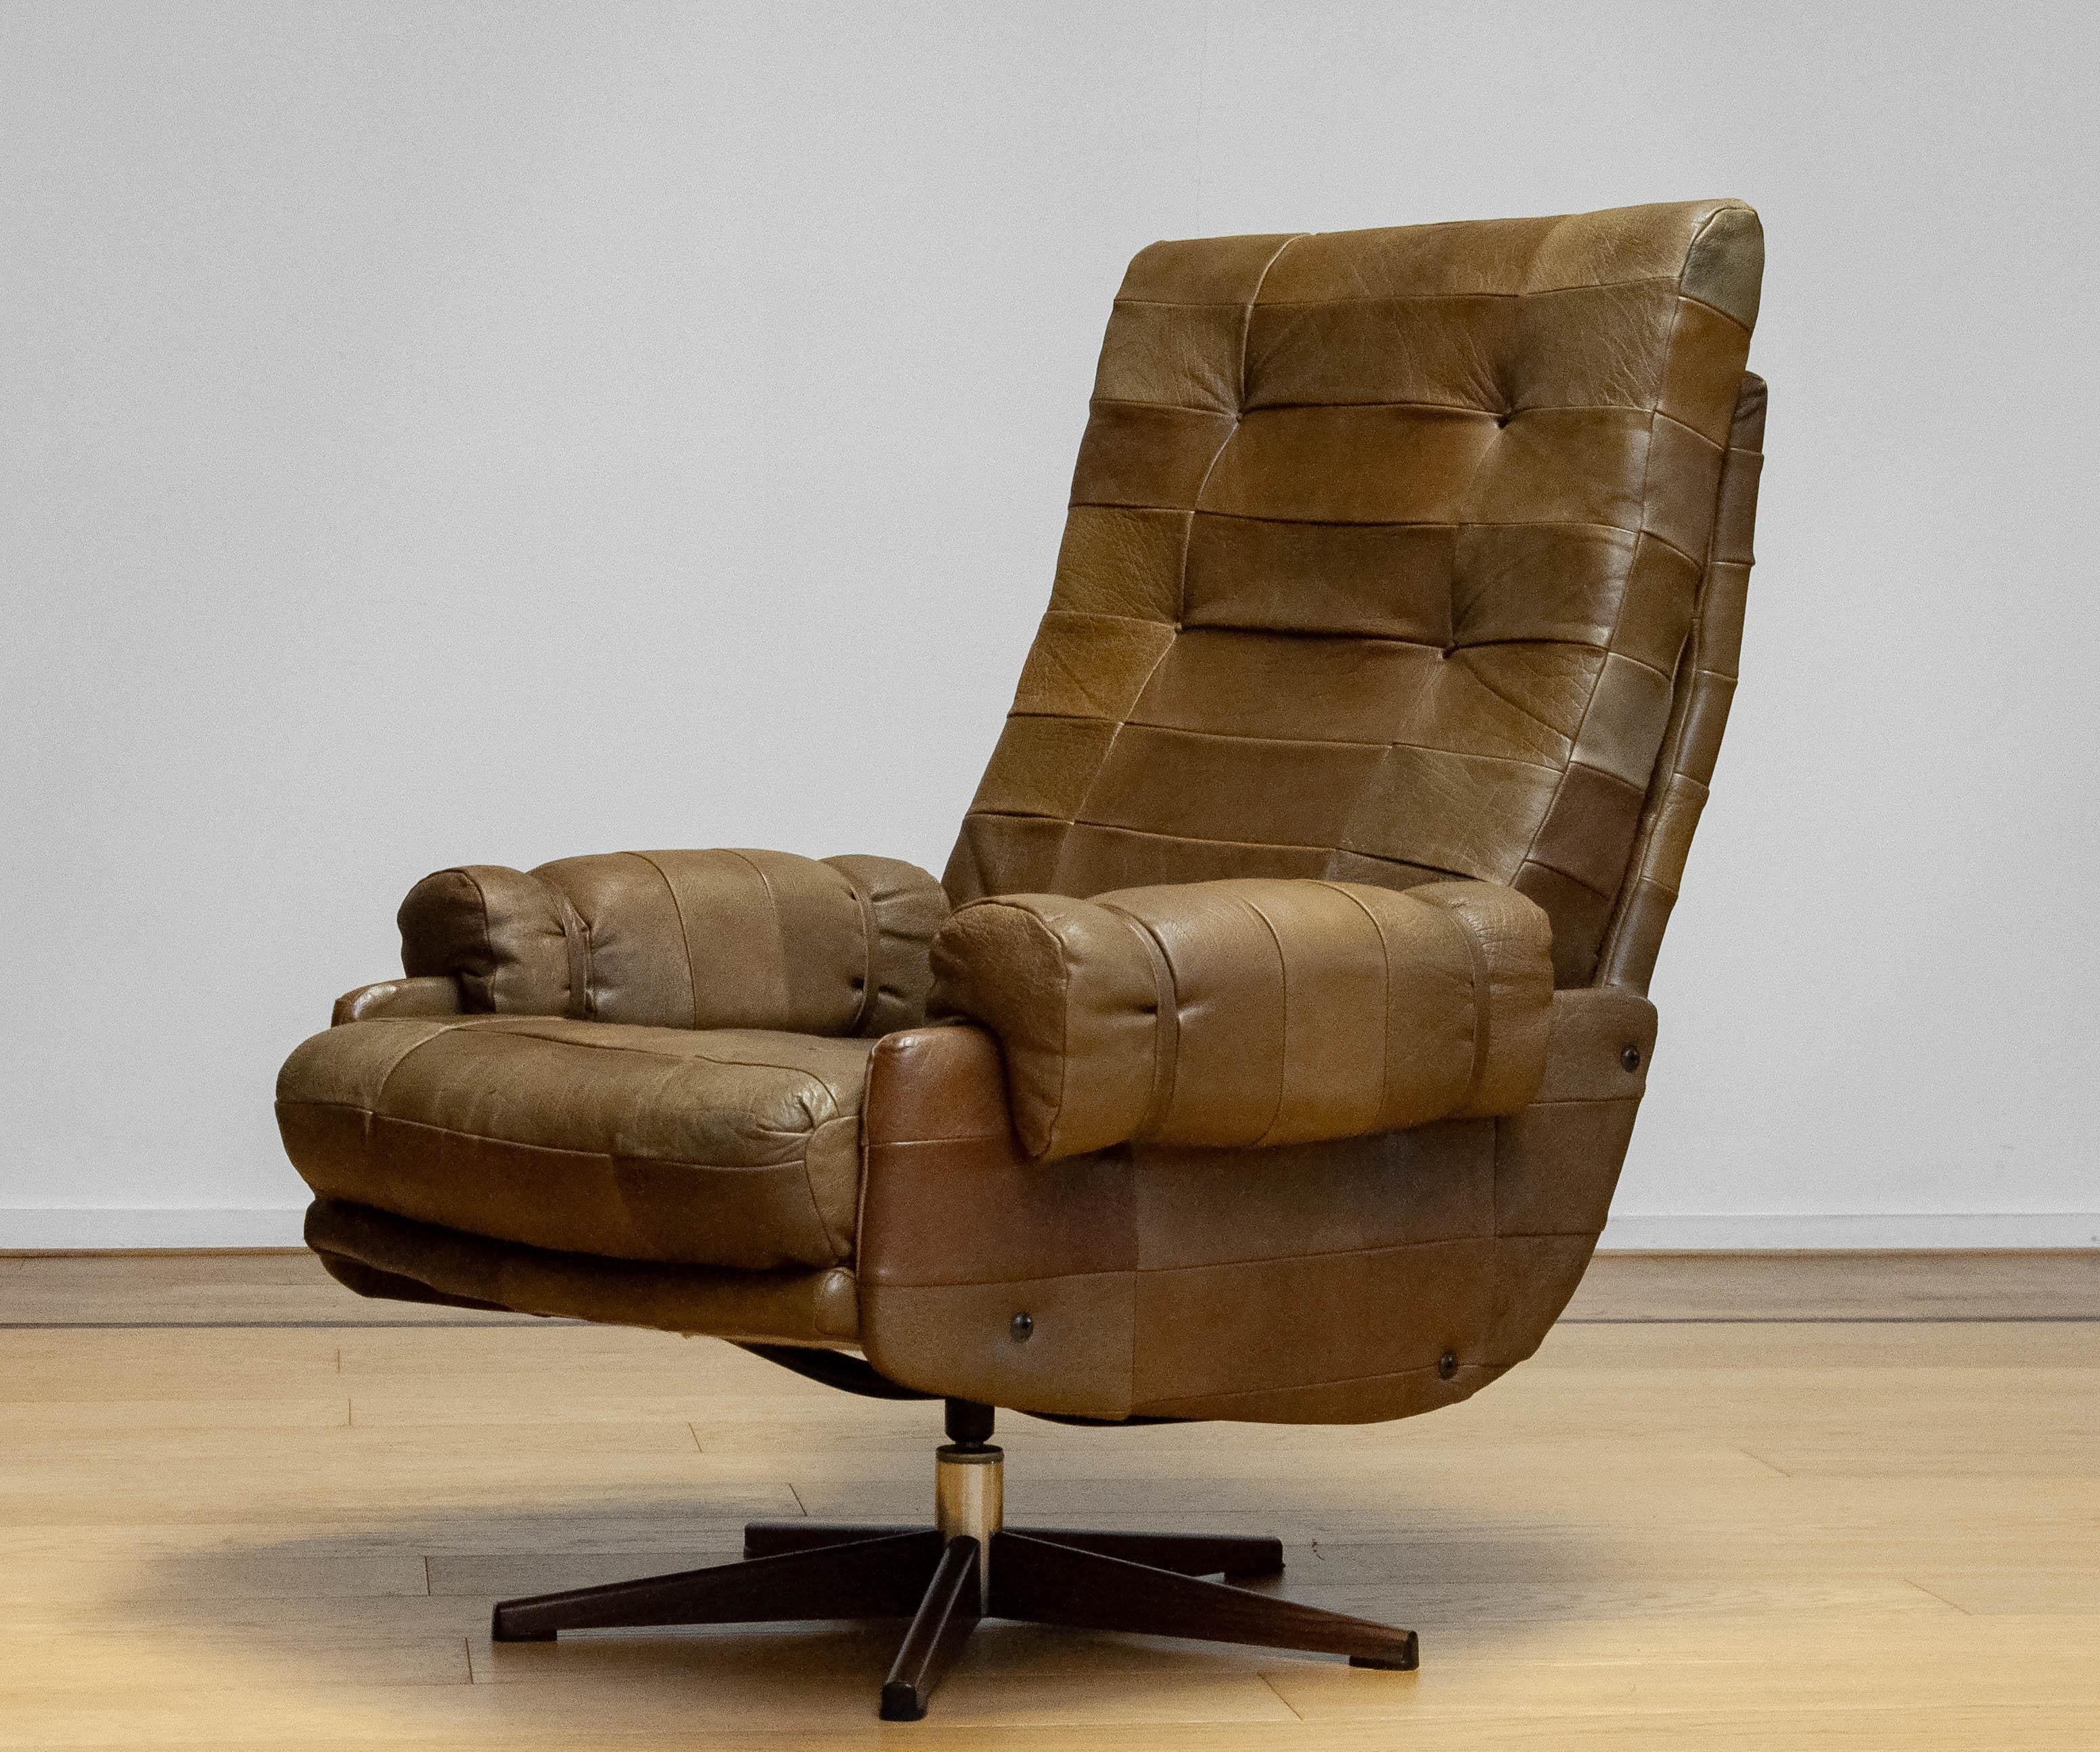 Fauteuil pivotant extrêmement confortable d'Arne Norell pour Norell Möbler AB en Suède. La chaise est recouverte d'un magnifique et robuste cuir de buffle vert olive (patchwork). La chaise offre un excellent soutien et est parfaitement adaptée aux